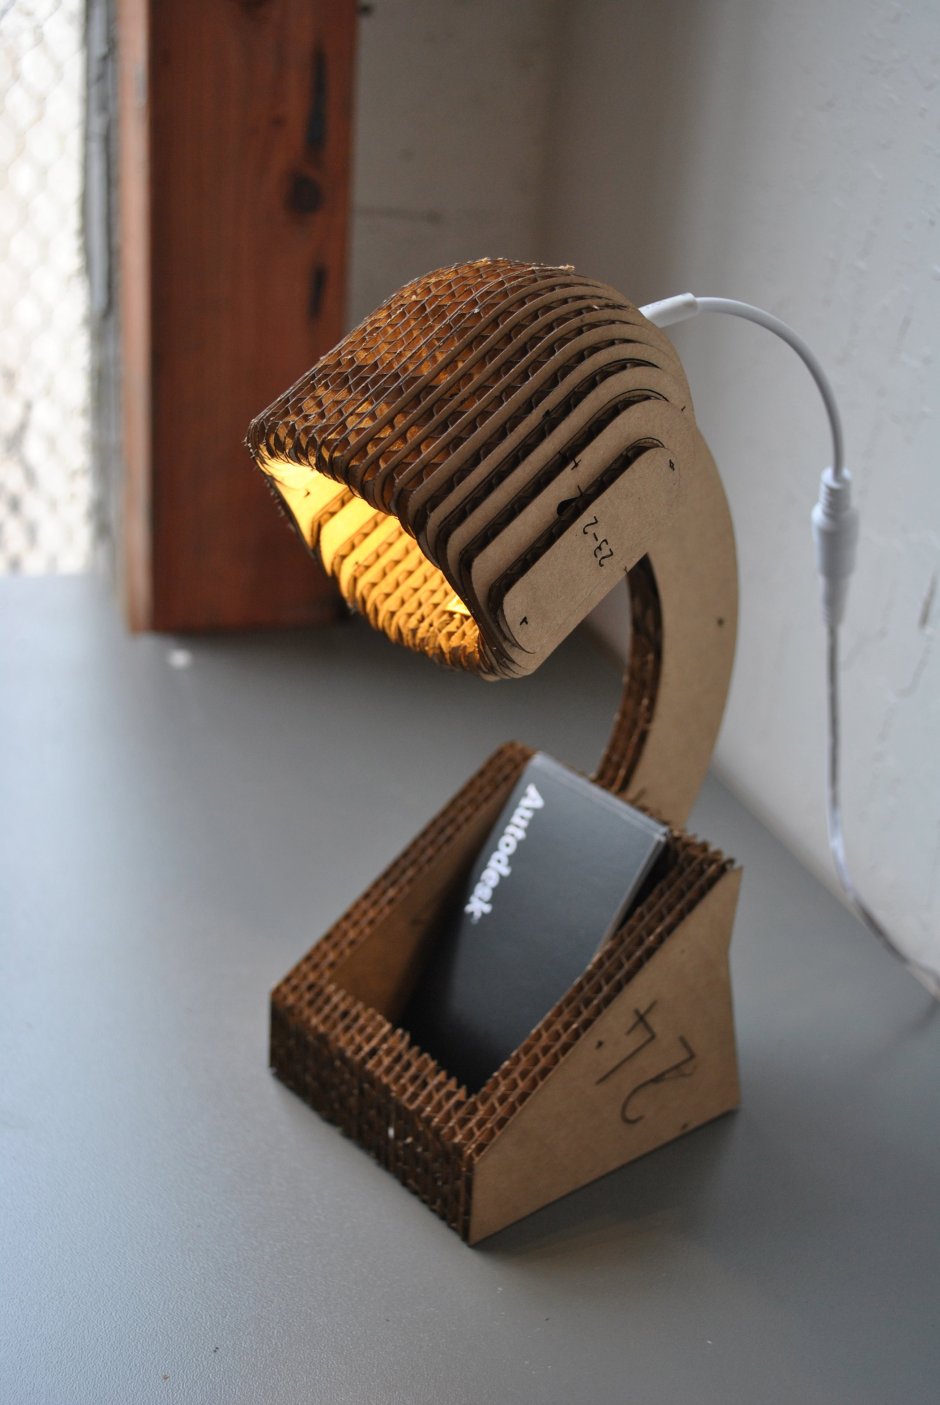 Оптоволоконный светильник своими руками из картона